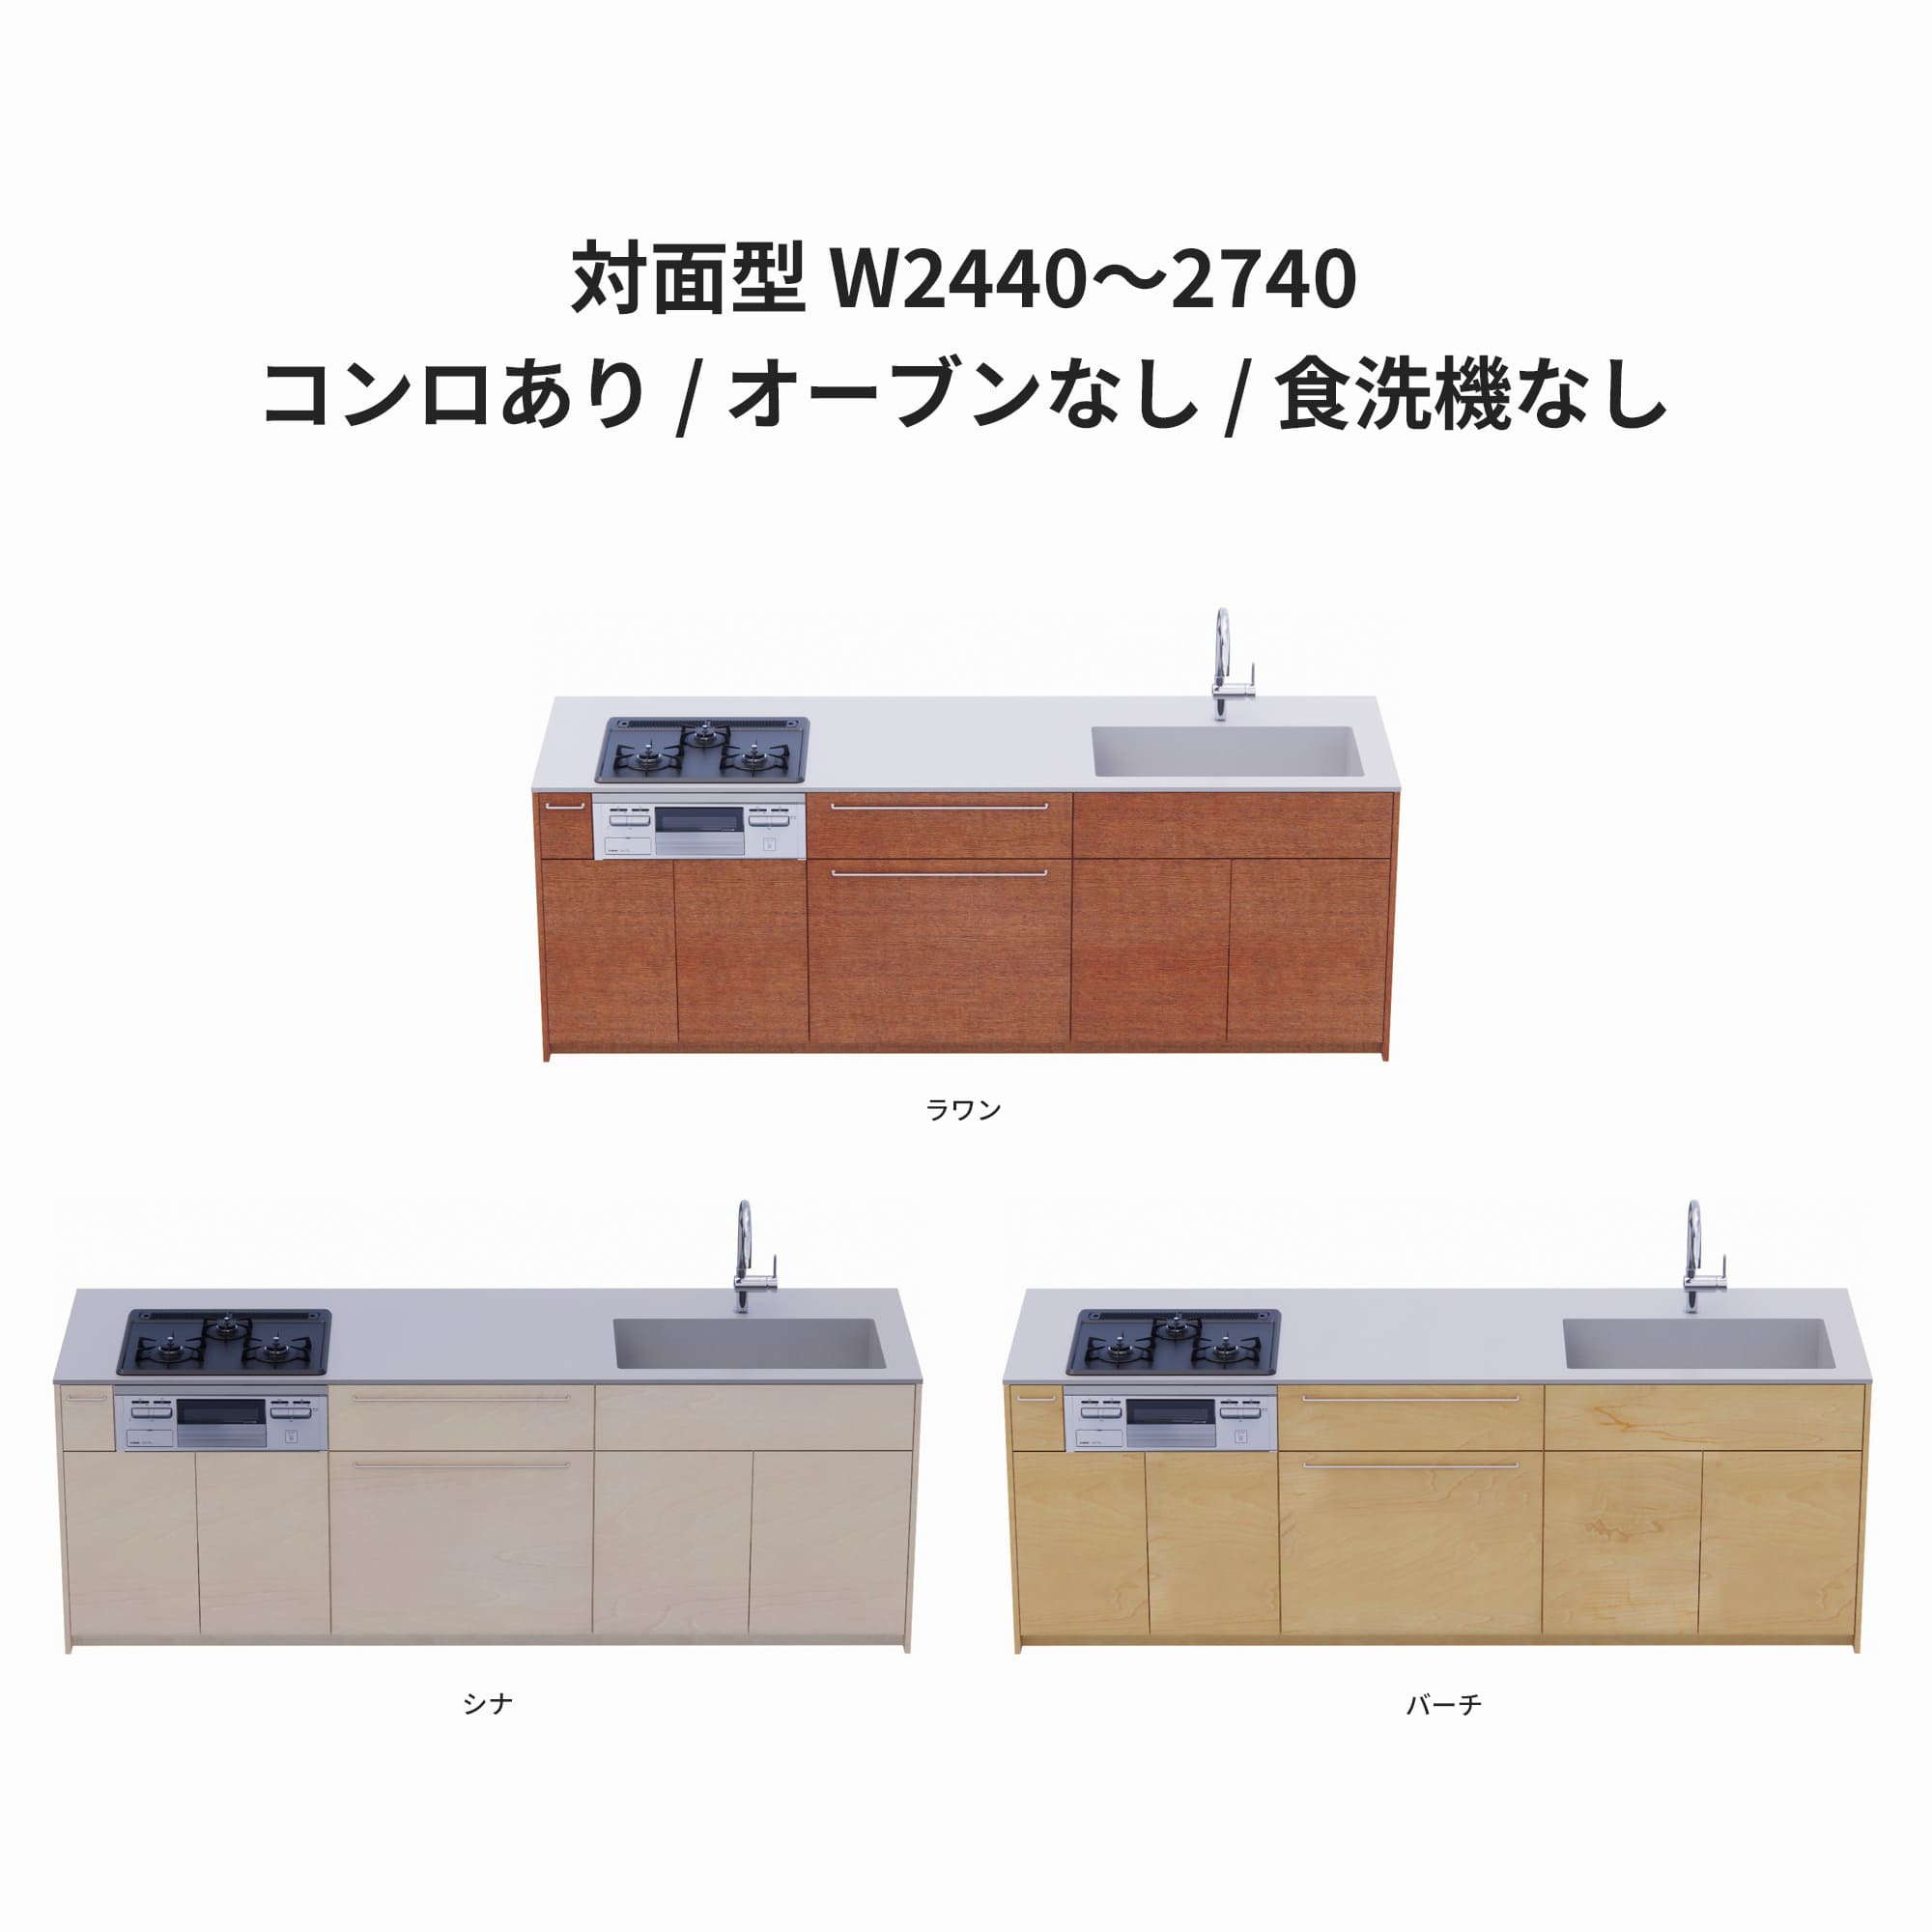 木製システムキッチン 対面型 W2440～2740・コンロあり / オーブンなし / 食洗機なし KB-KC022-41-G183 ラワン・シナ・バーチが選択できます